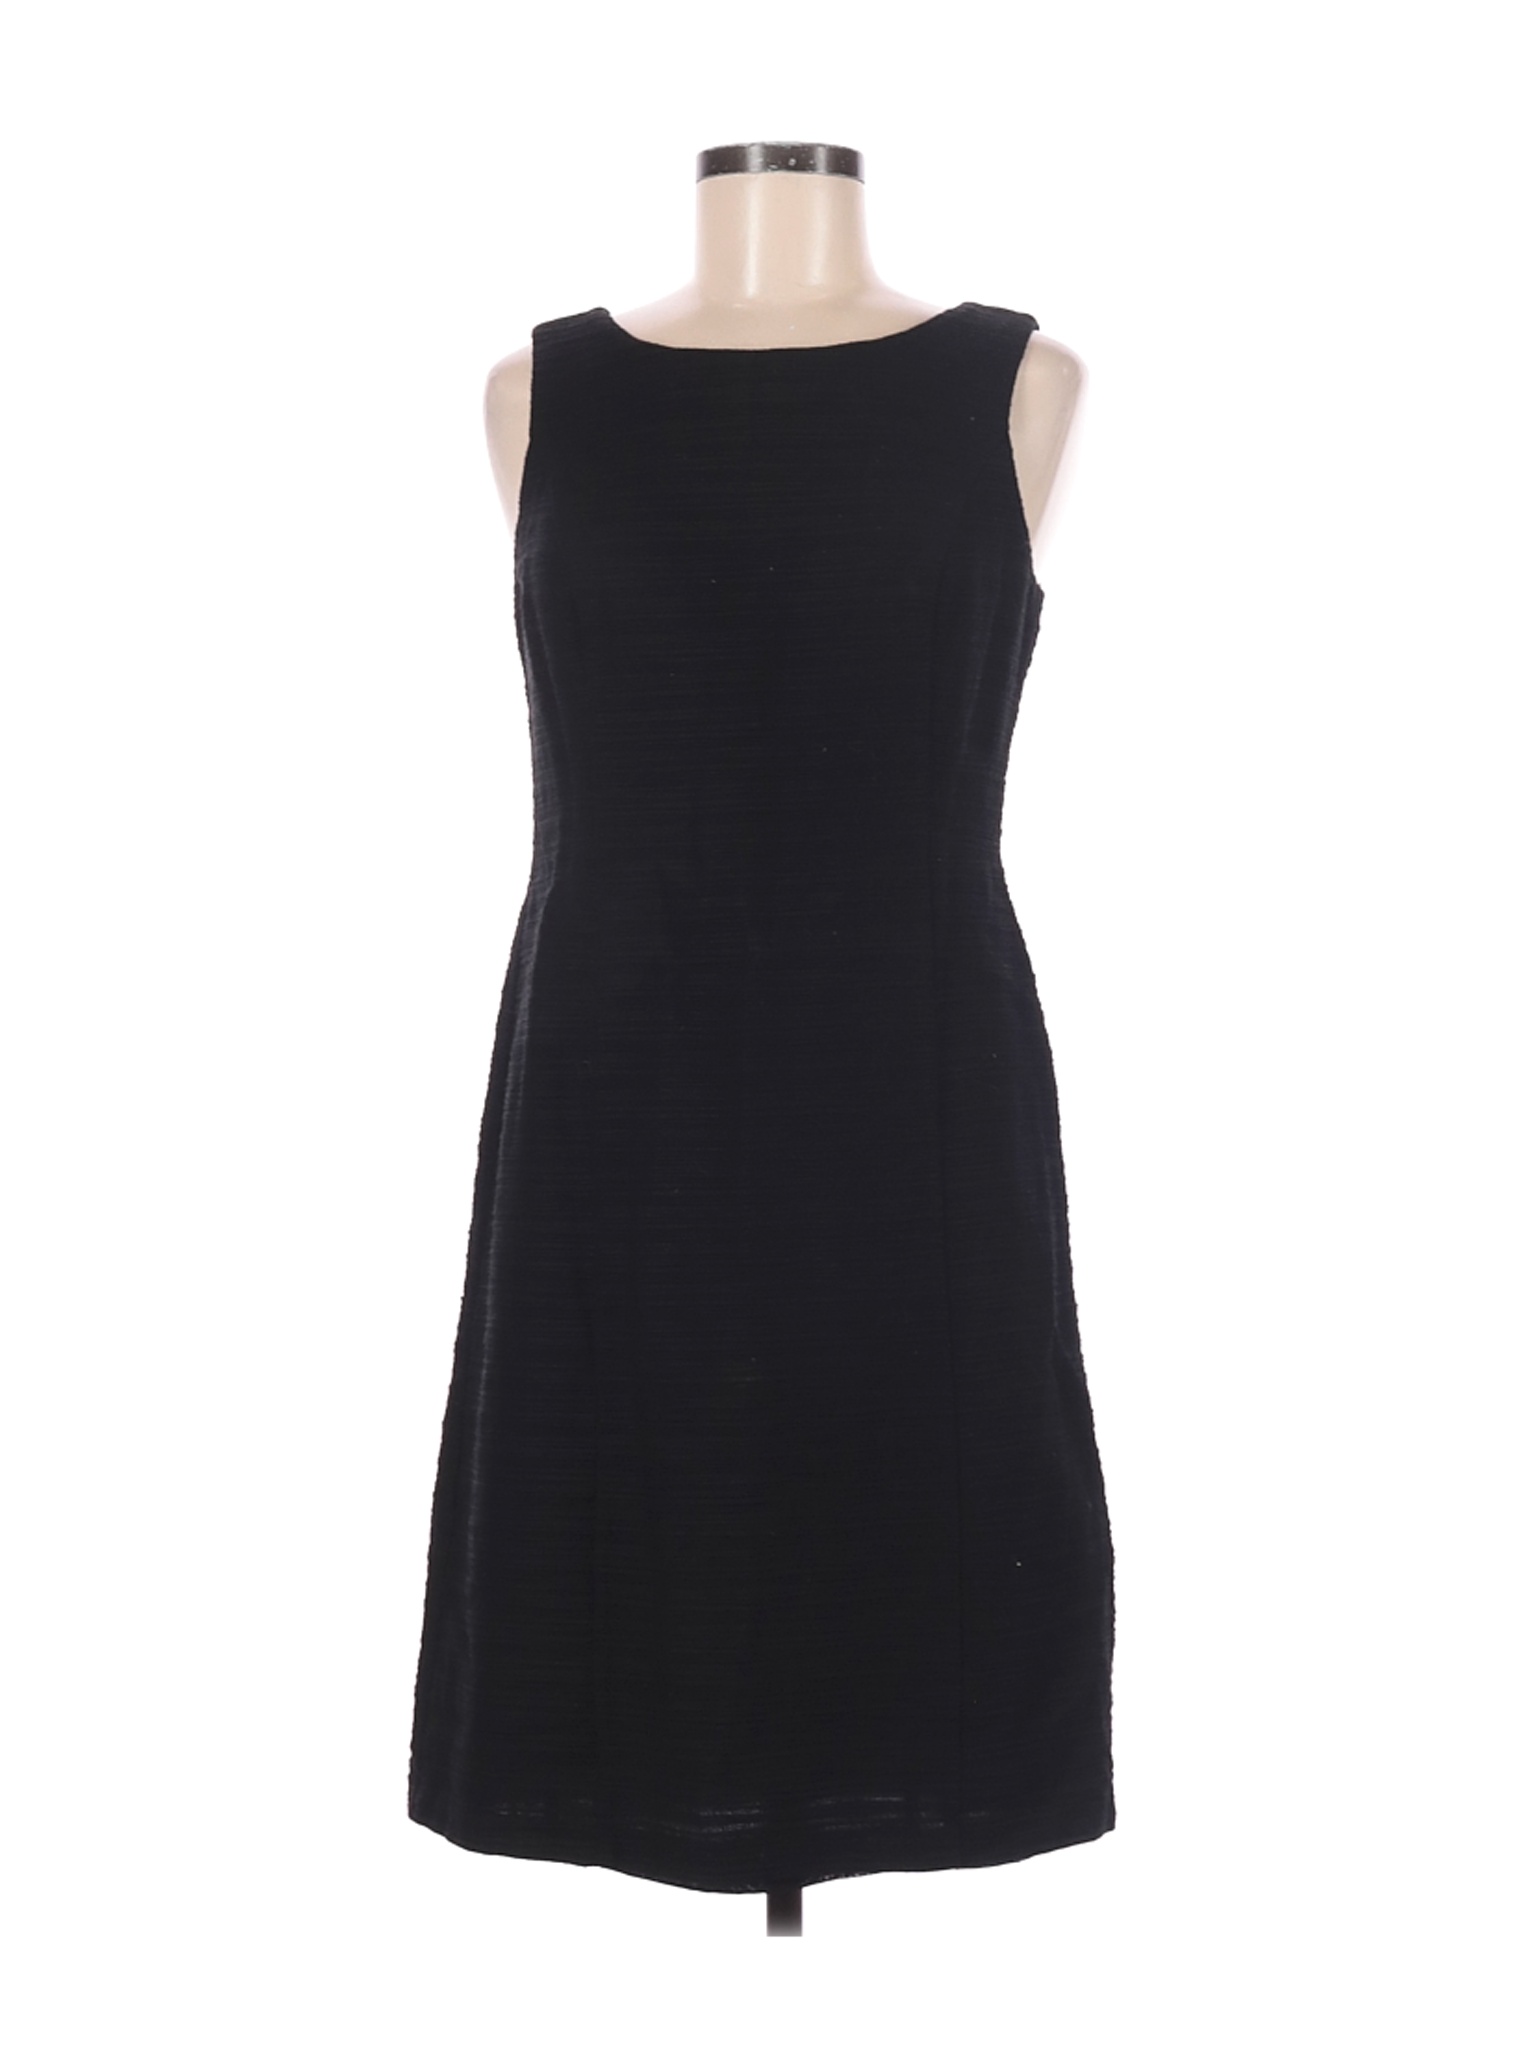 Saks Fifth Avenue Women Black Casual Dress 6 | eBay